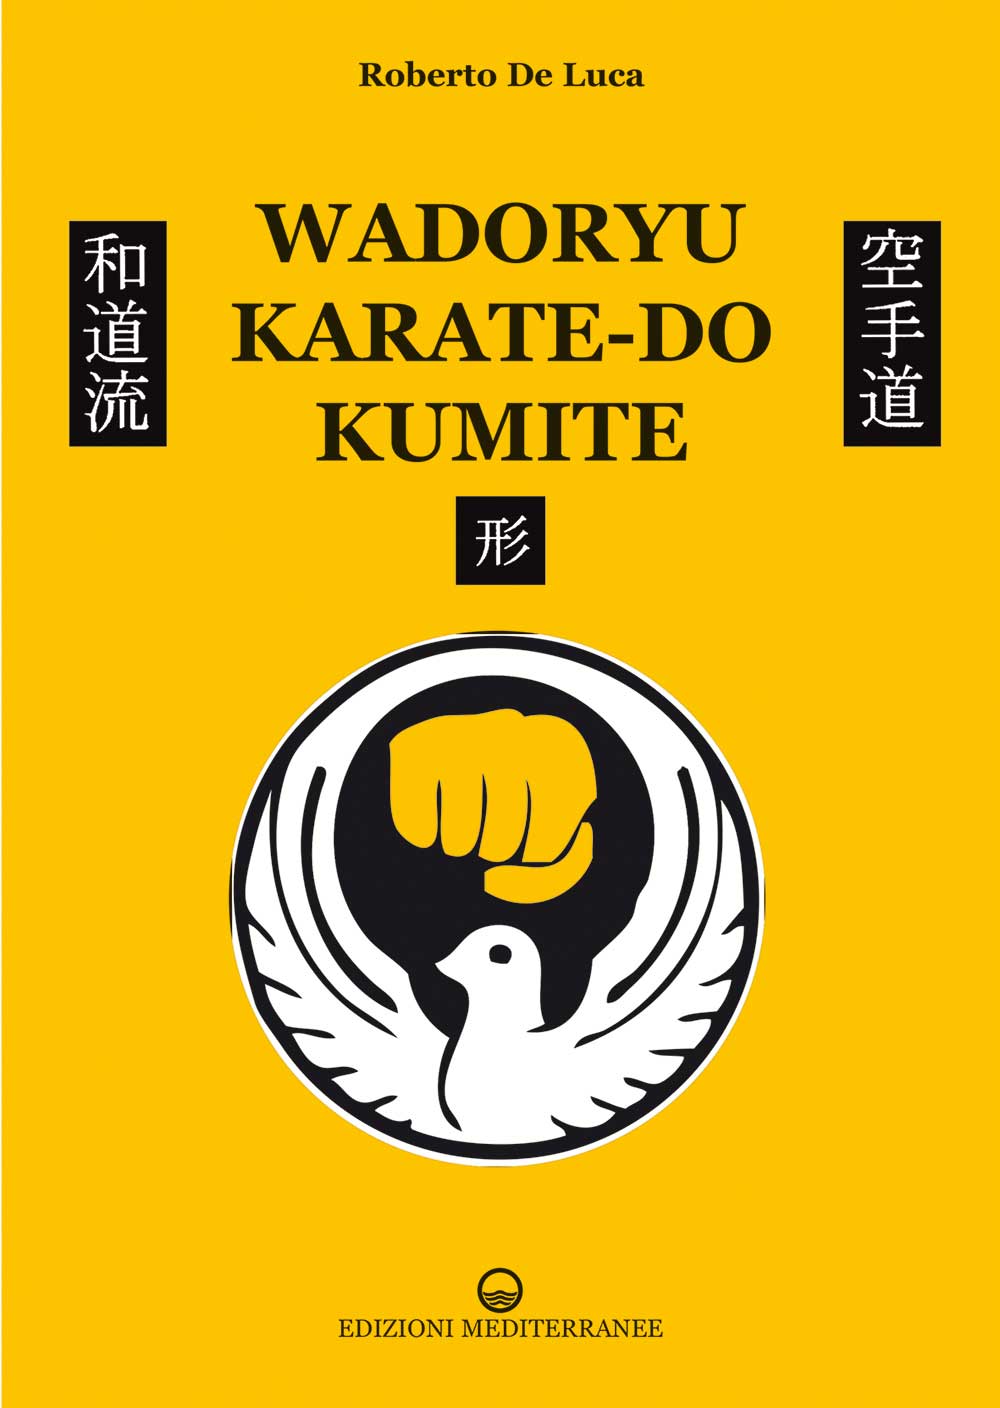 Libri De Luca Roberto - Wadoryu Karate-Do Kumite NUOVO SIGILLATO, EDIZIONE DEL 27/01/2022 SUBITO DISPONIBILE